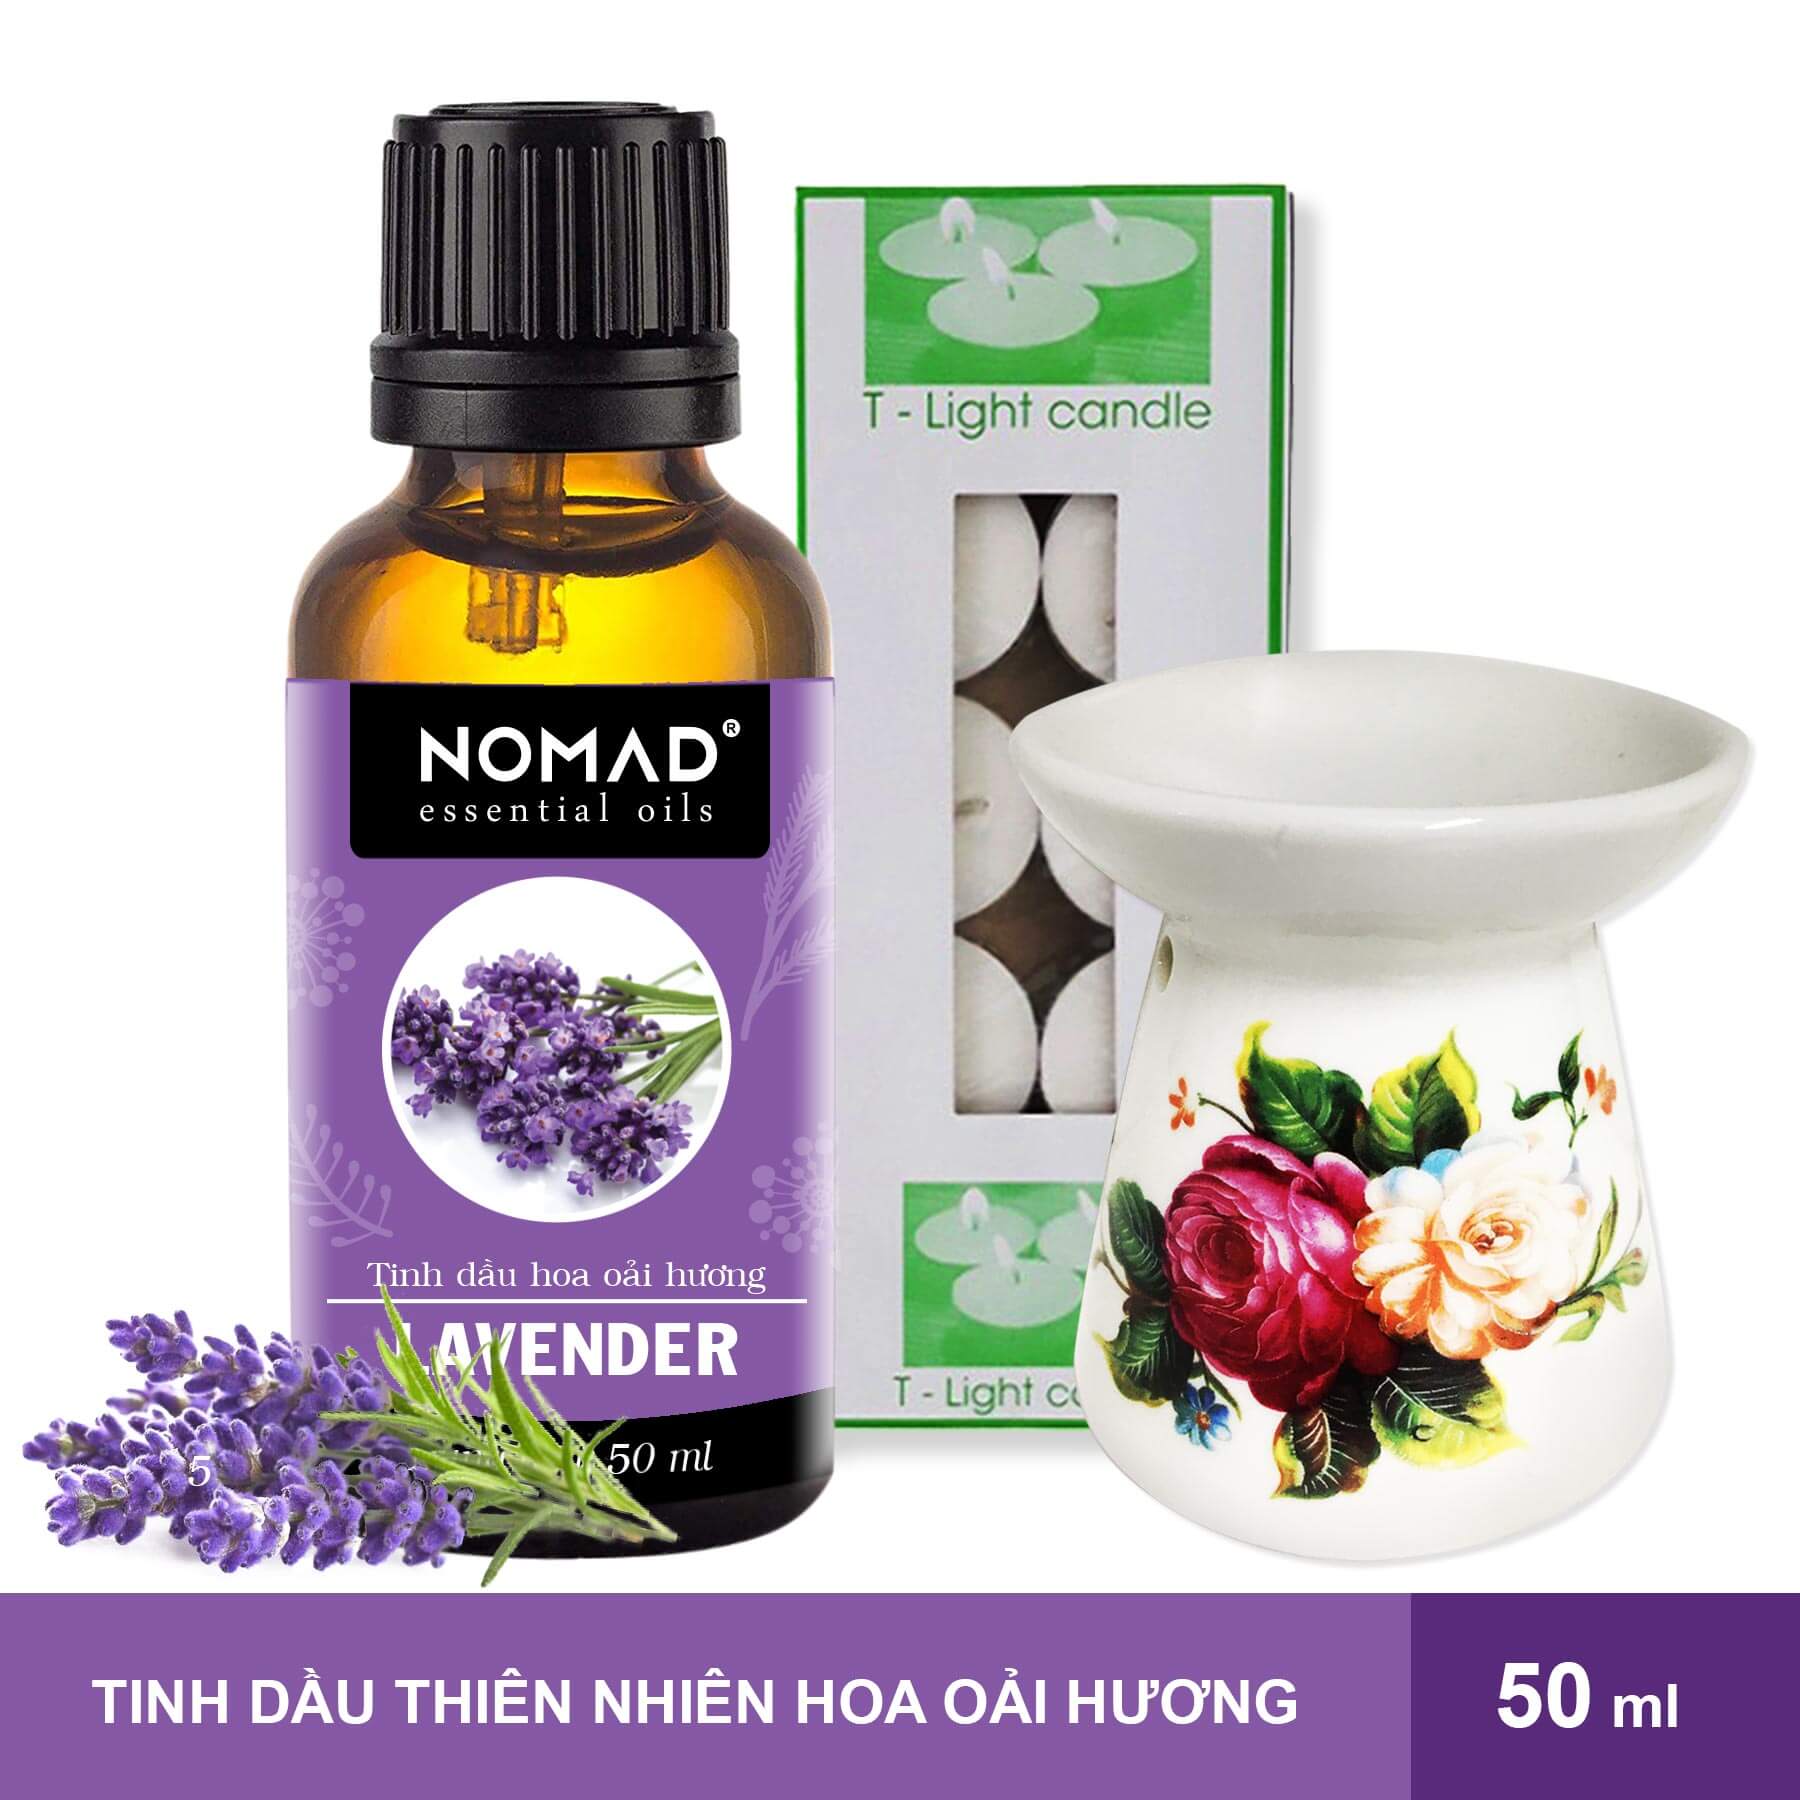 combo-tinh-dau-hoa-oai-huong-nomad-lavender-essential-oils-50ml-den-dot-dang-nen-1-hop-nen-tealight-10-vien